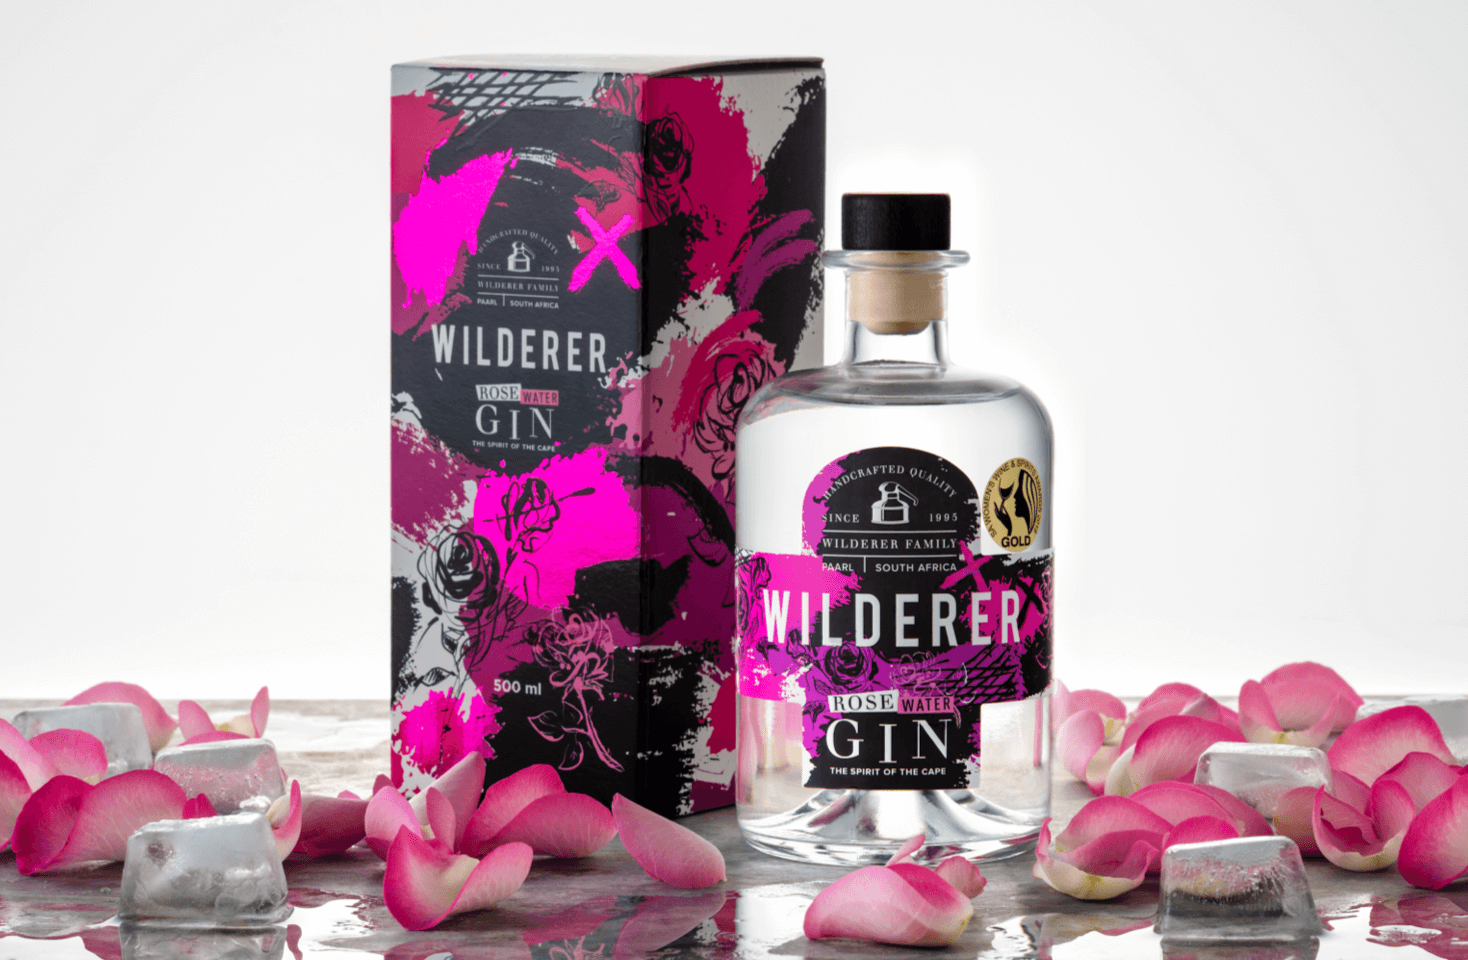 Image of Wilderer Rose Water Gin